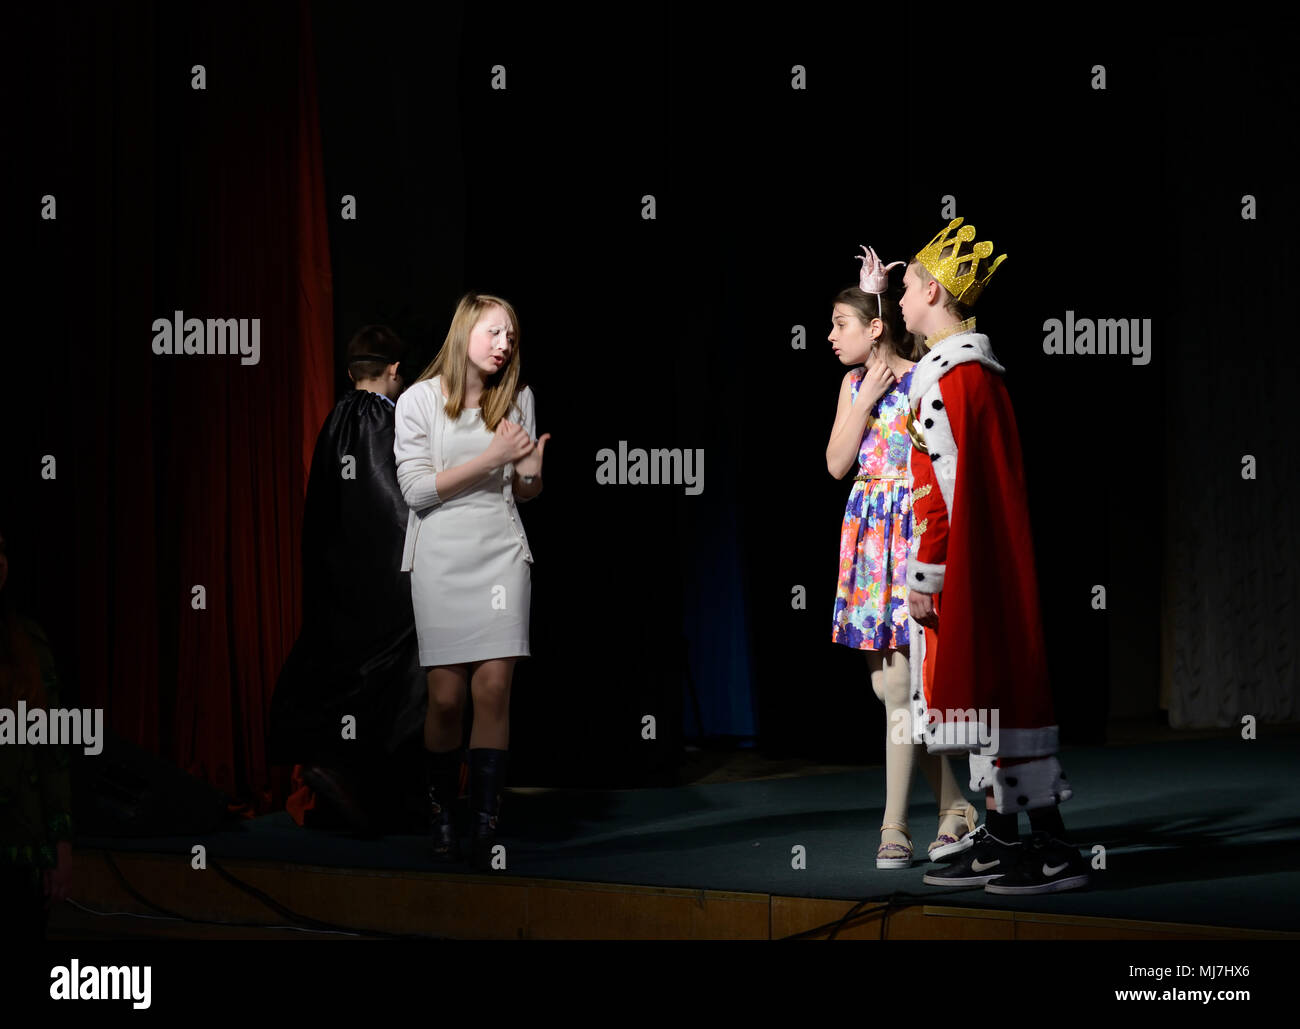 Les adolescents Les adolescents à participer au concours de jeunes talents, la mise en scène basée sur le conte d'Andersen "La reine des neiges" Saint-Pétersbourg, Russie Banque D'Images